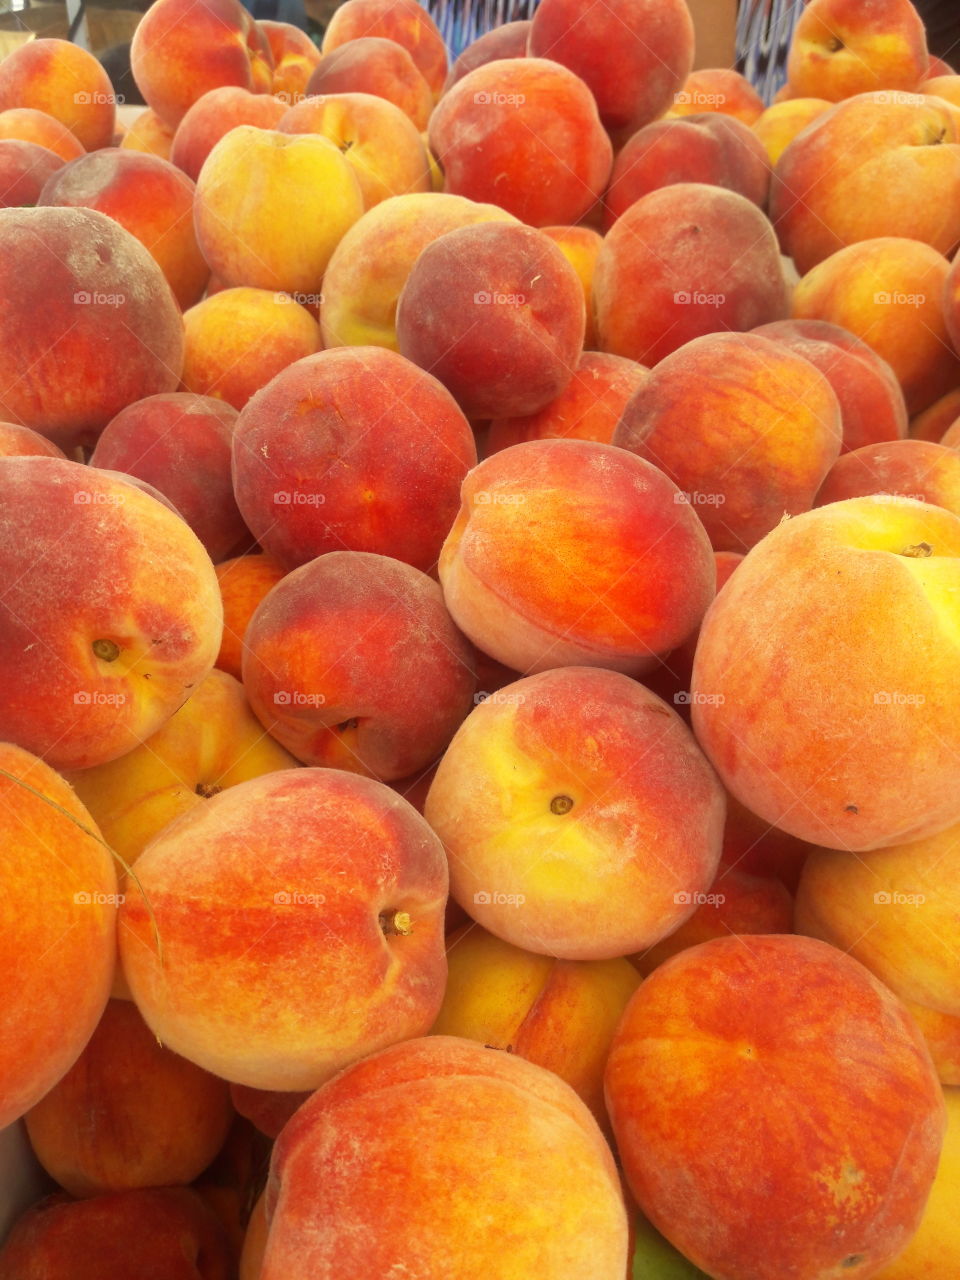 Peaches at farmers market